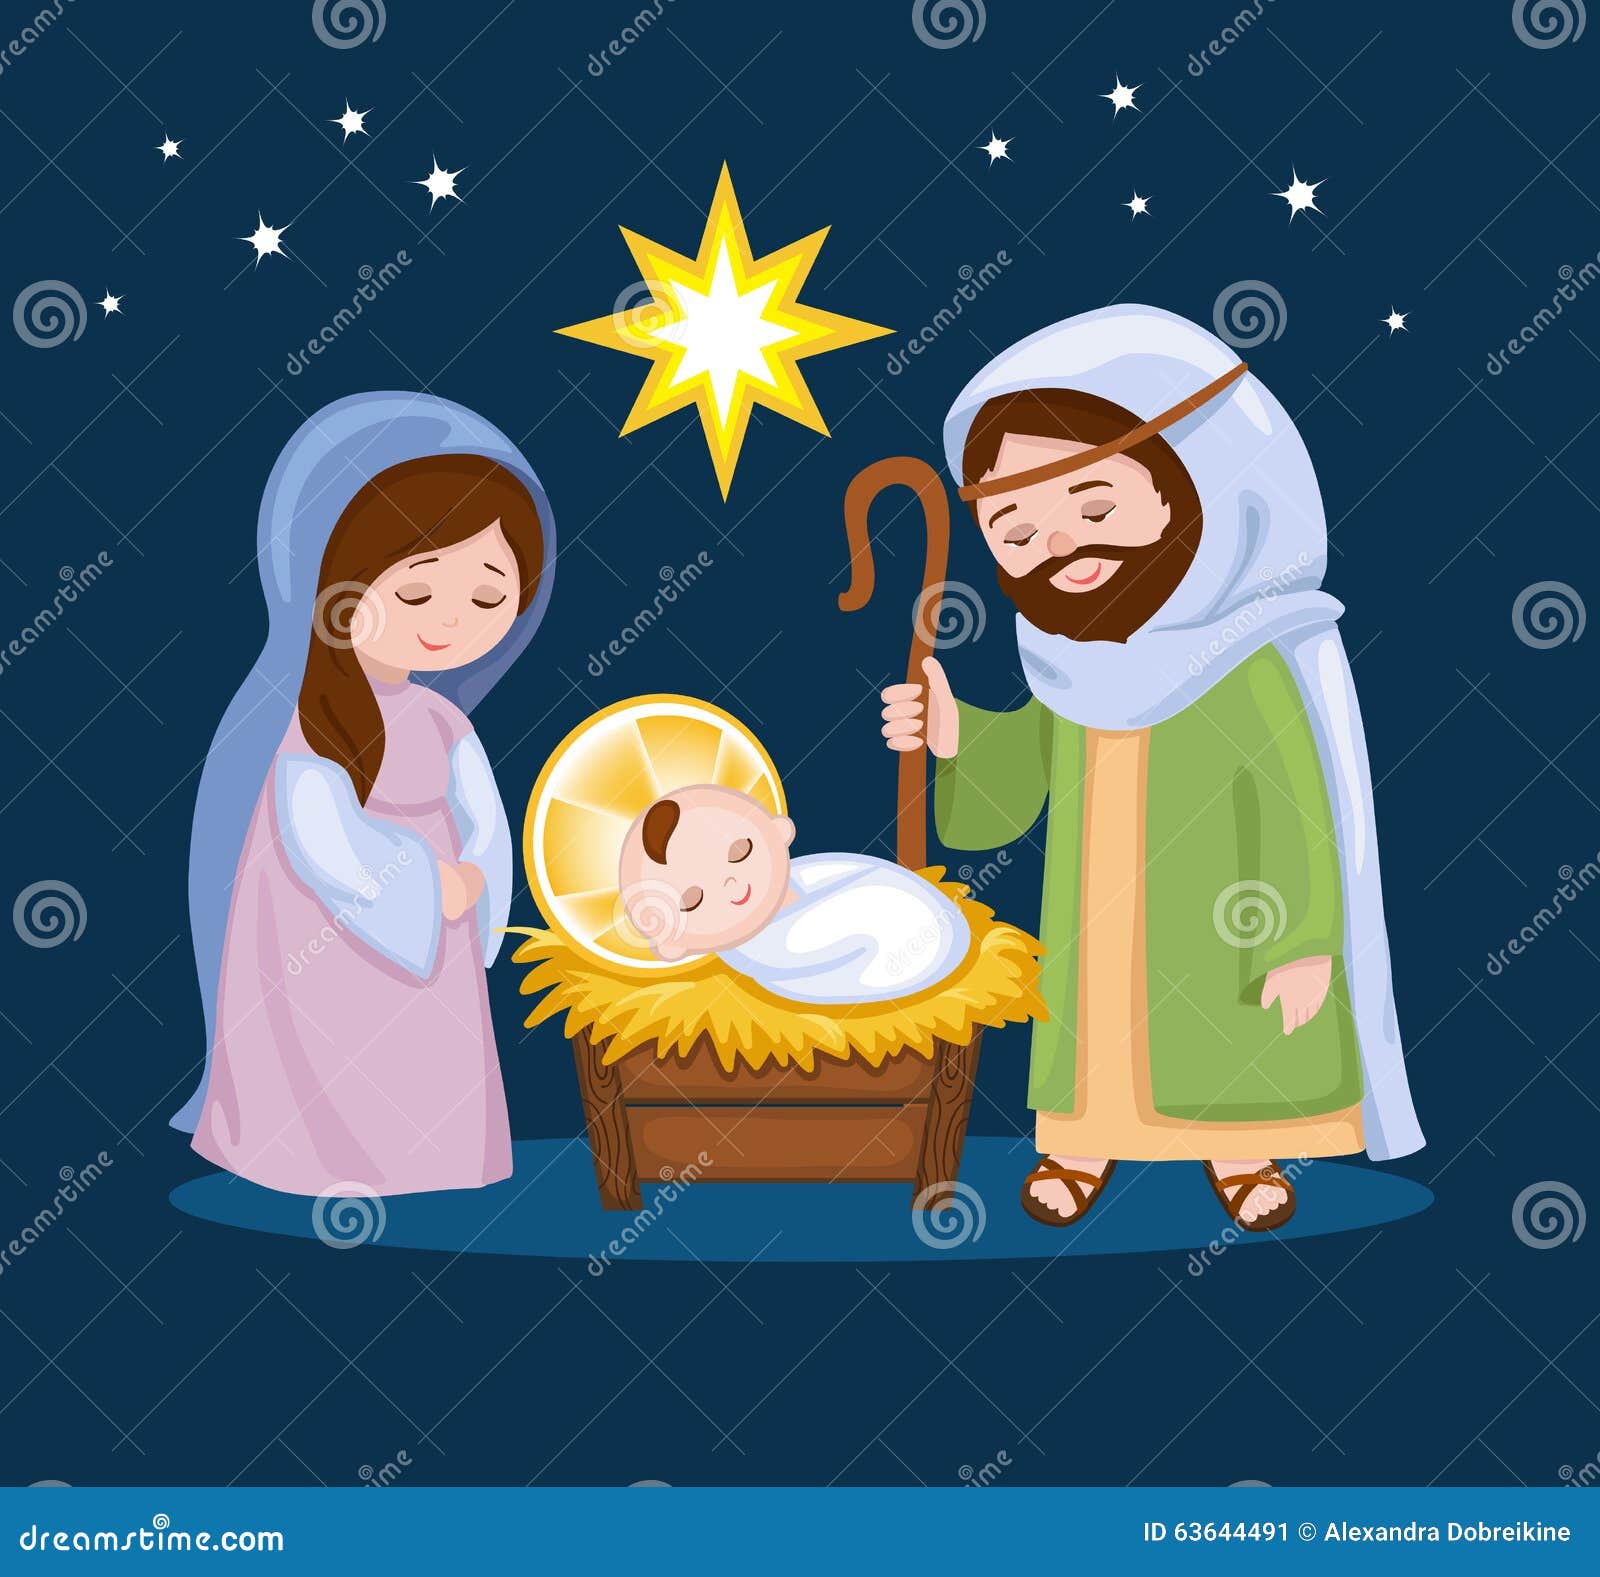 Cartoon Nativity Scene with Holy Family Stock Vector ...